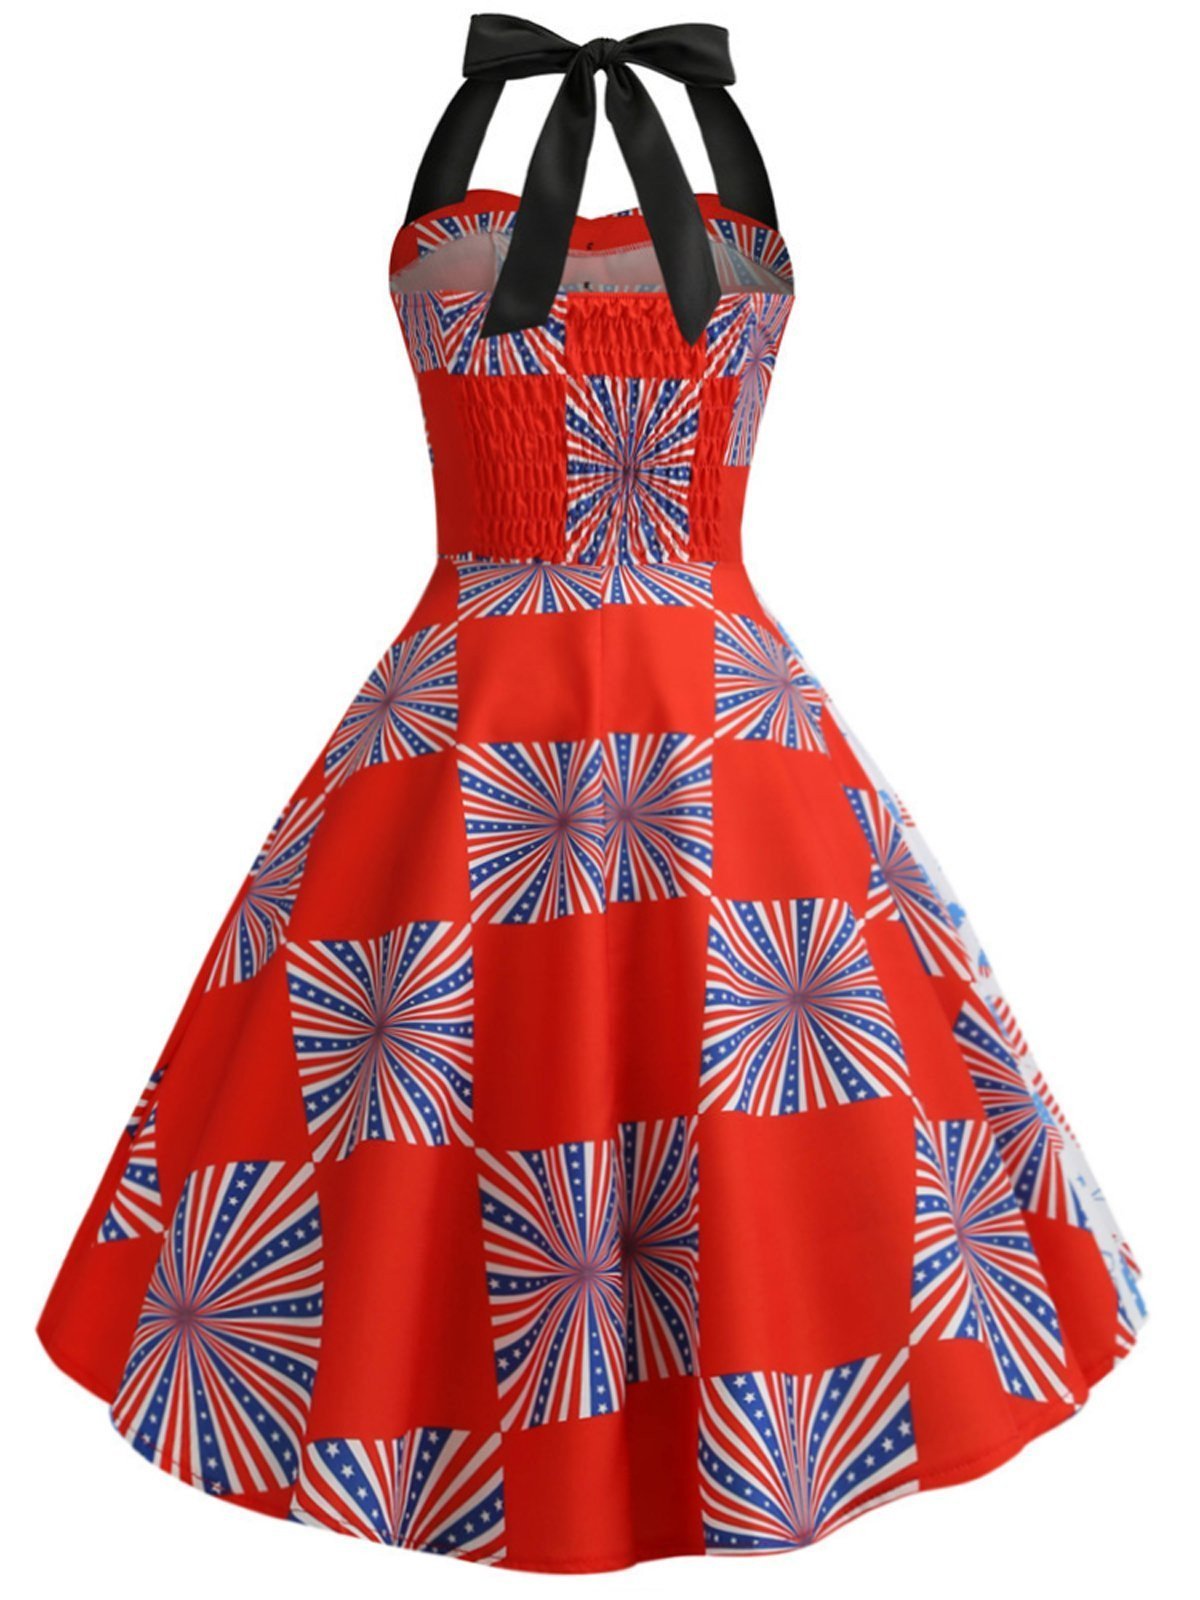 1950s American Flag Halter Dress